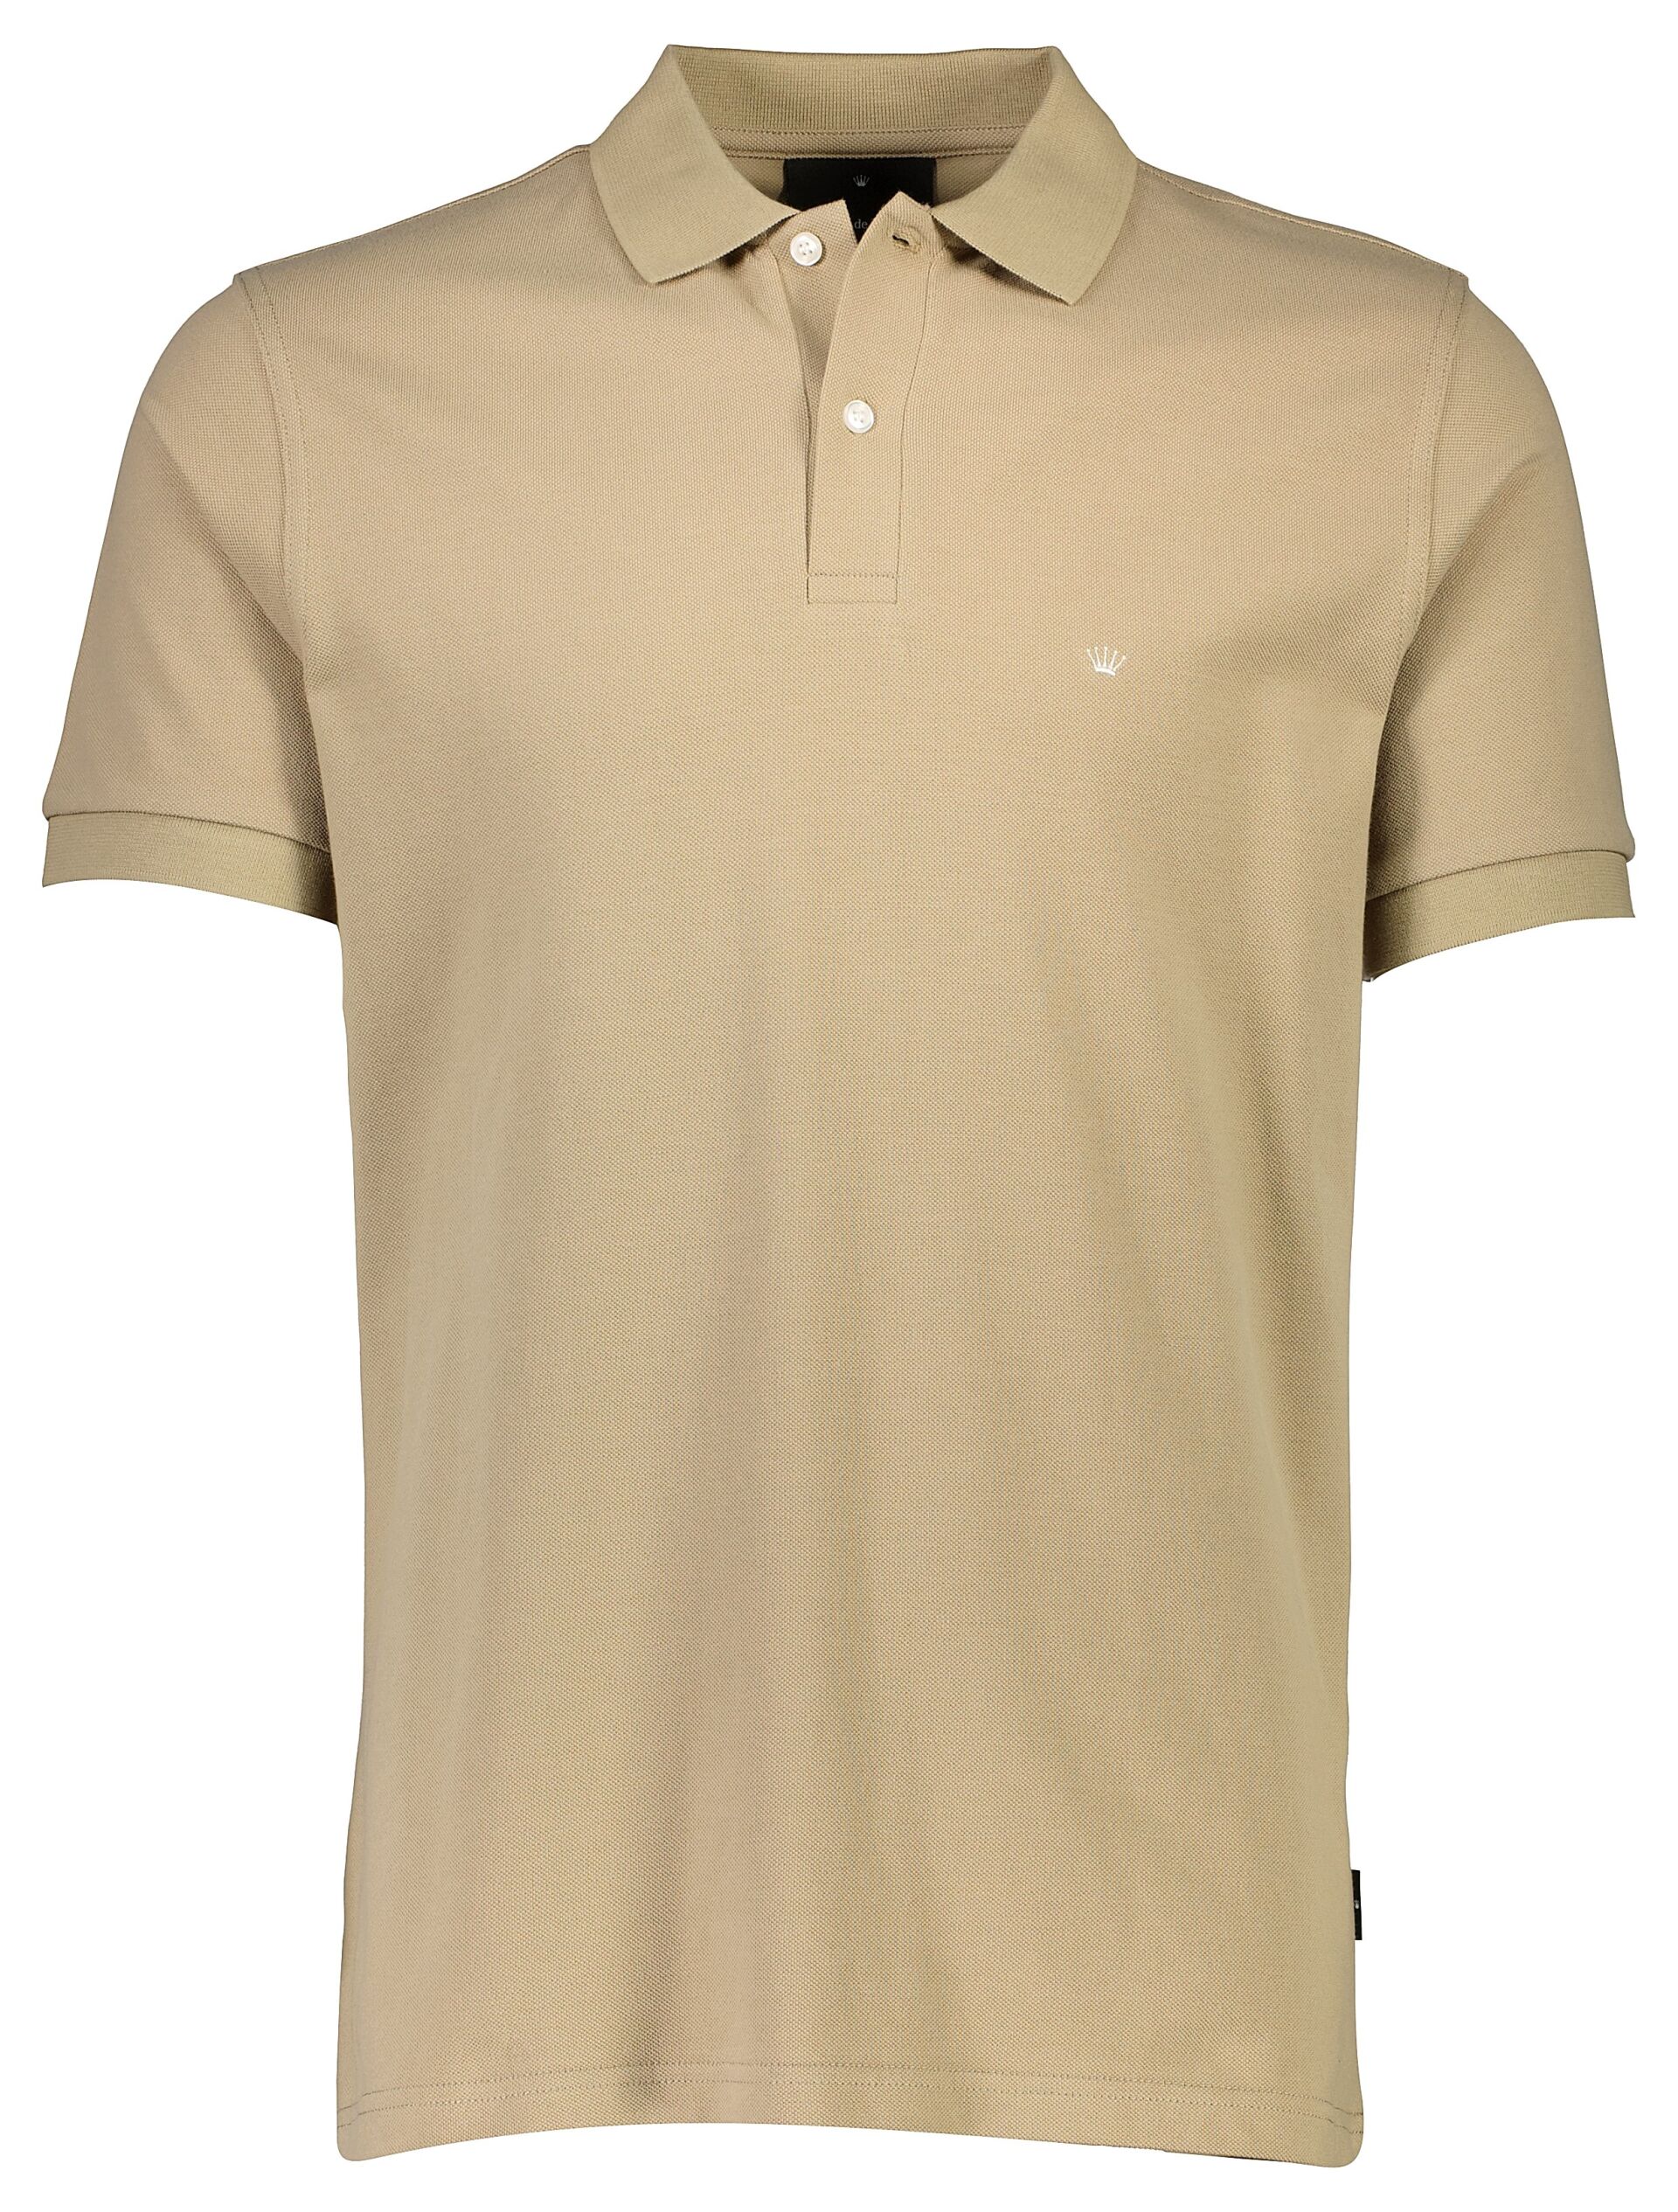 Polo shirt Polo shirt Sand 60-452045